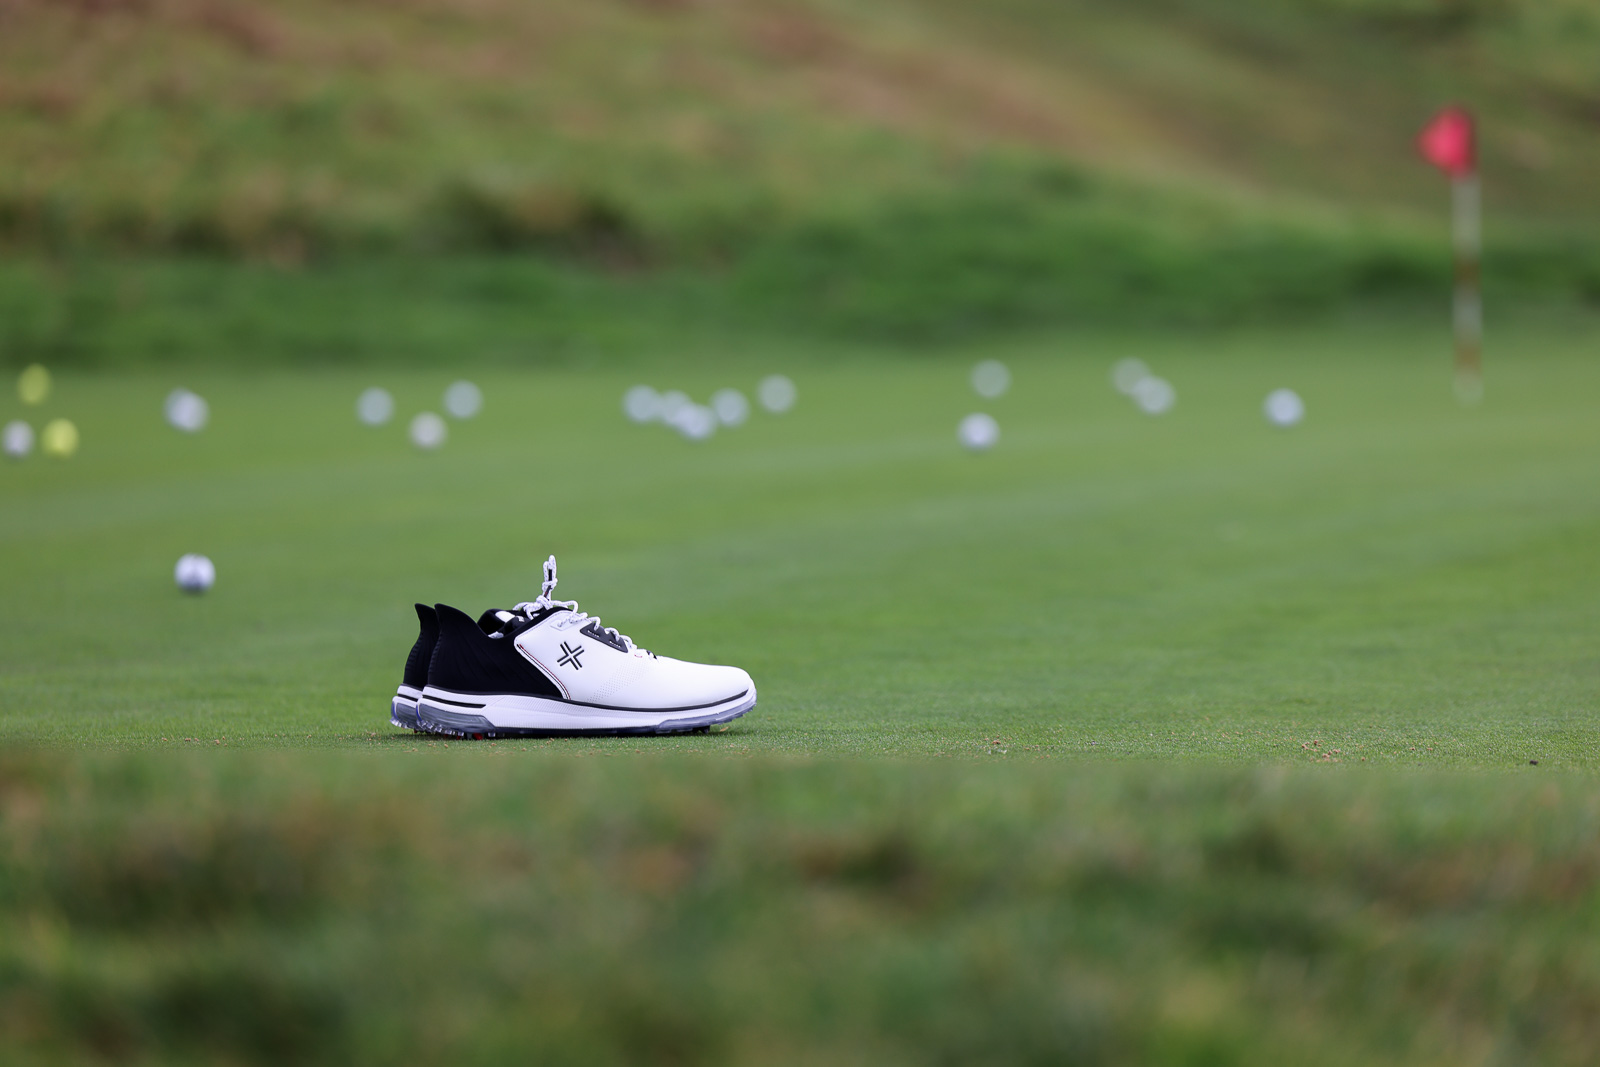 Payntr Golf X 004 Golf Shoe